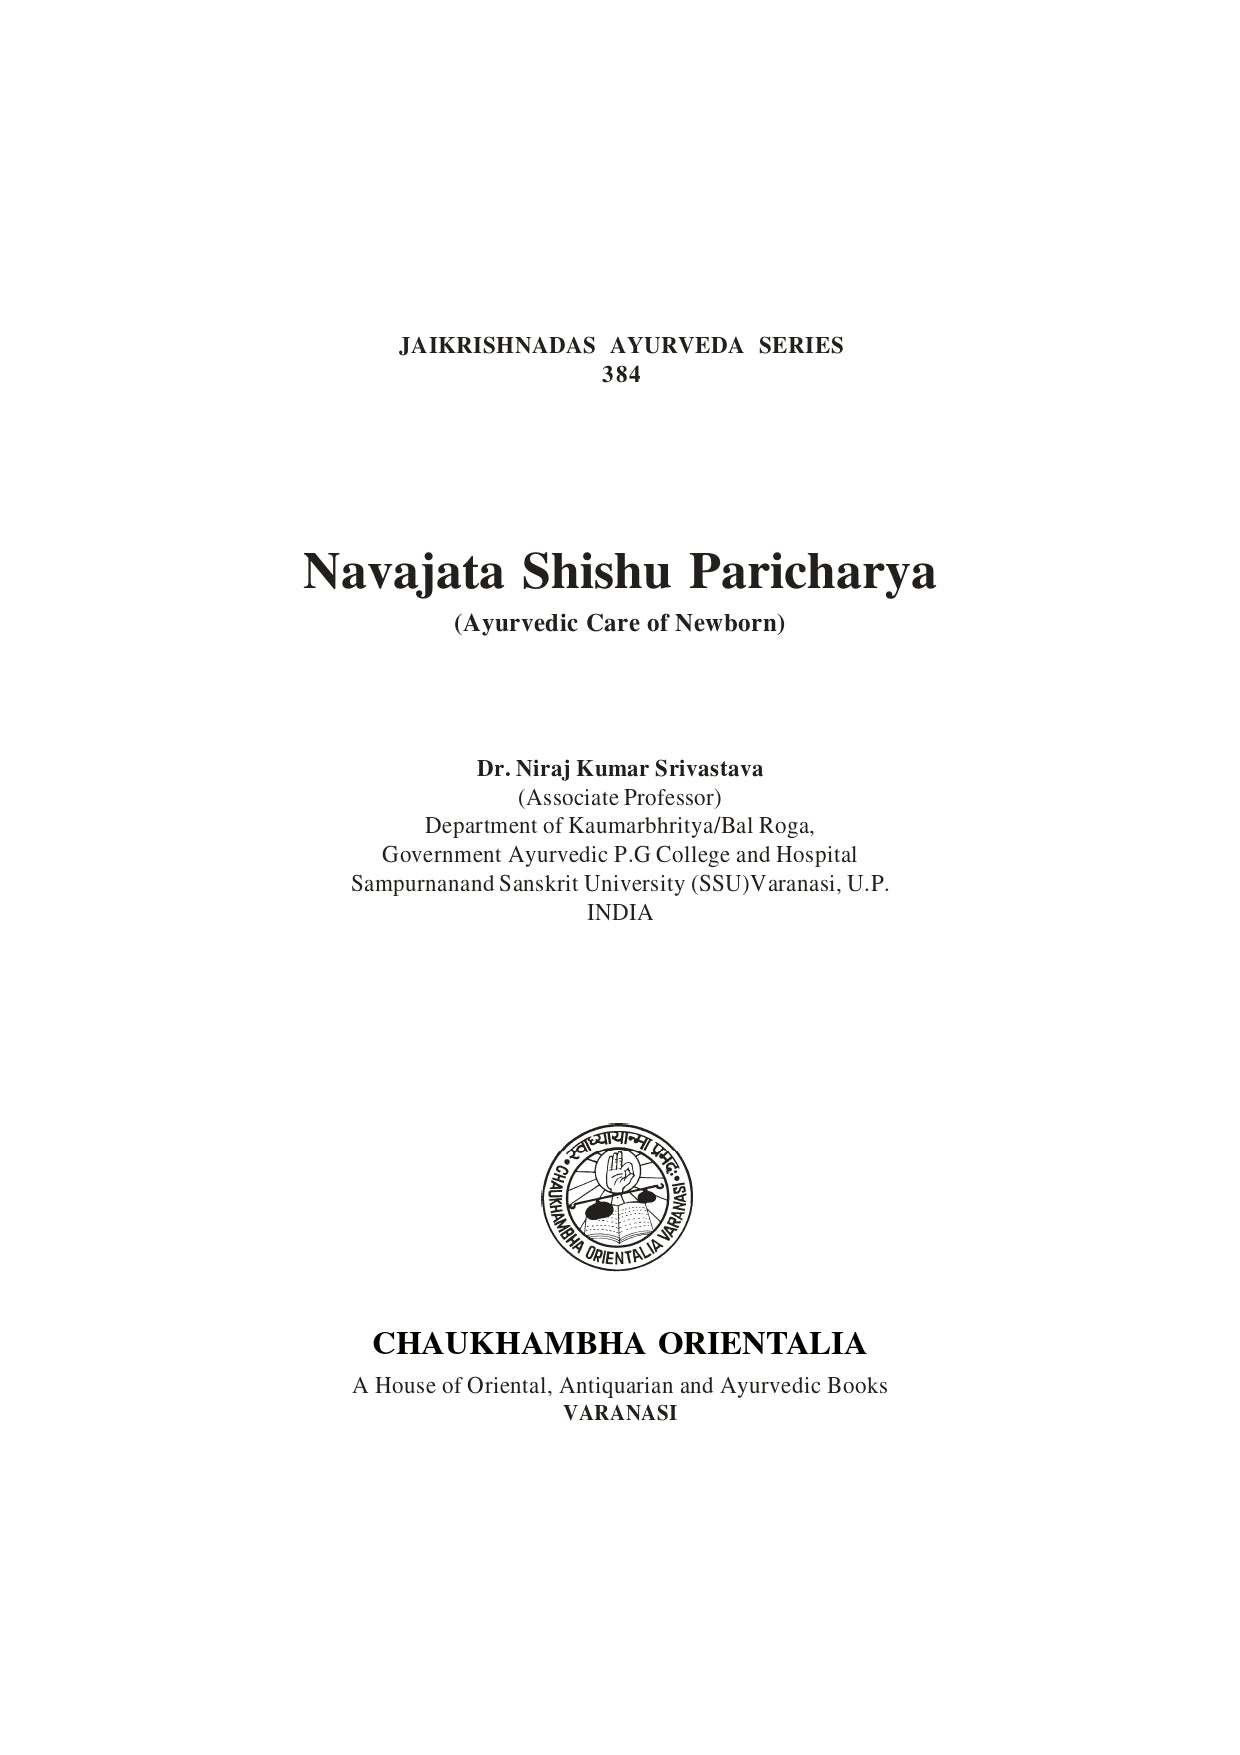 Chaukhambha Orientalia Navajata Shishu Paricharya (Ayurvedic care of newborn)